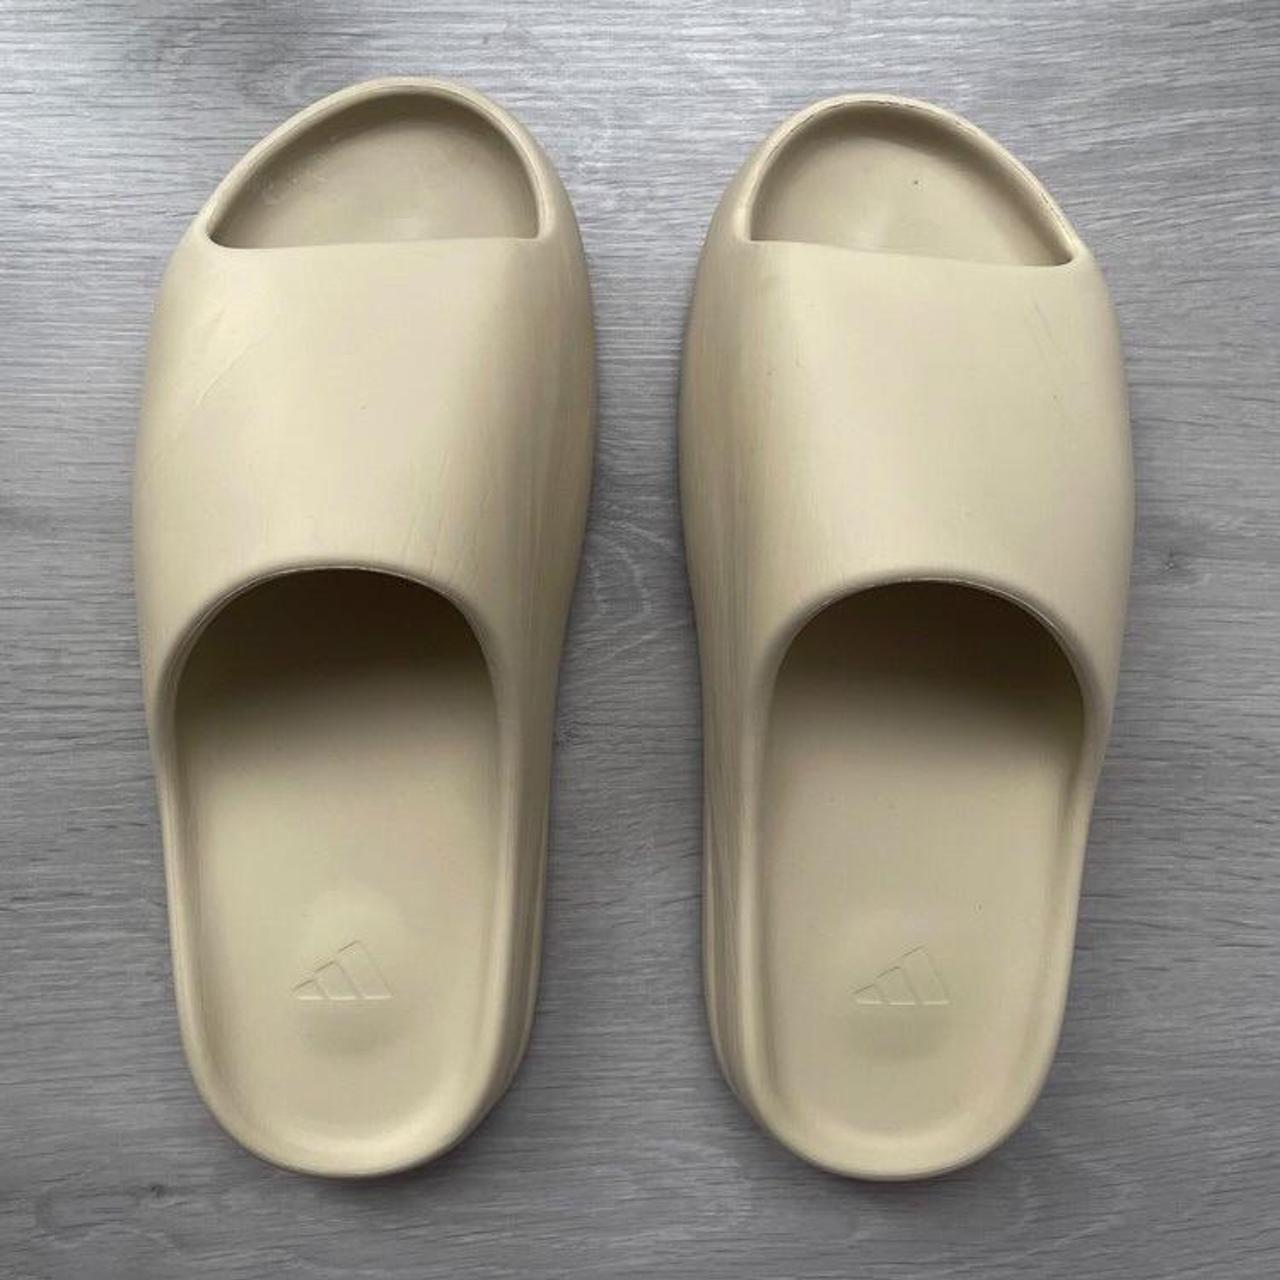 Product Image 1 - Adidas Yeezy Slides ‘Bone’ 
Size